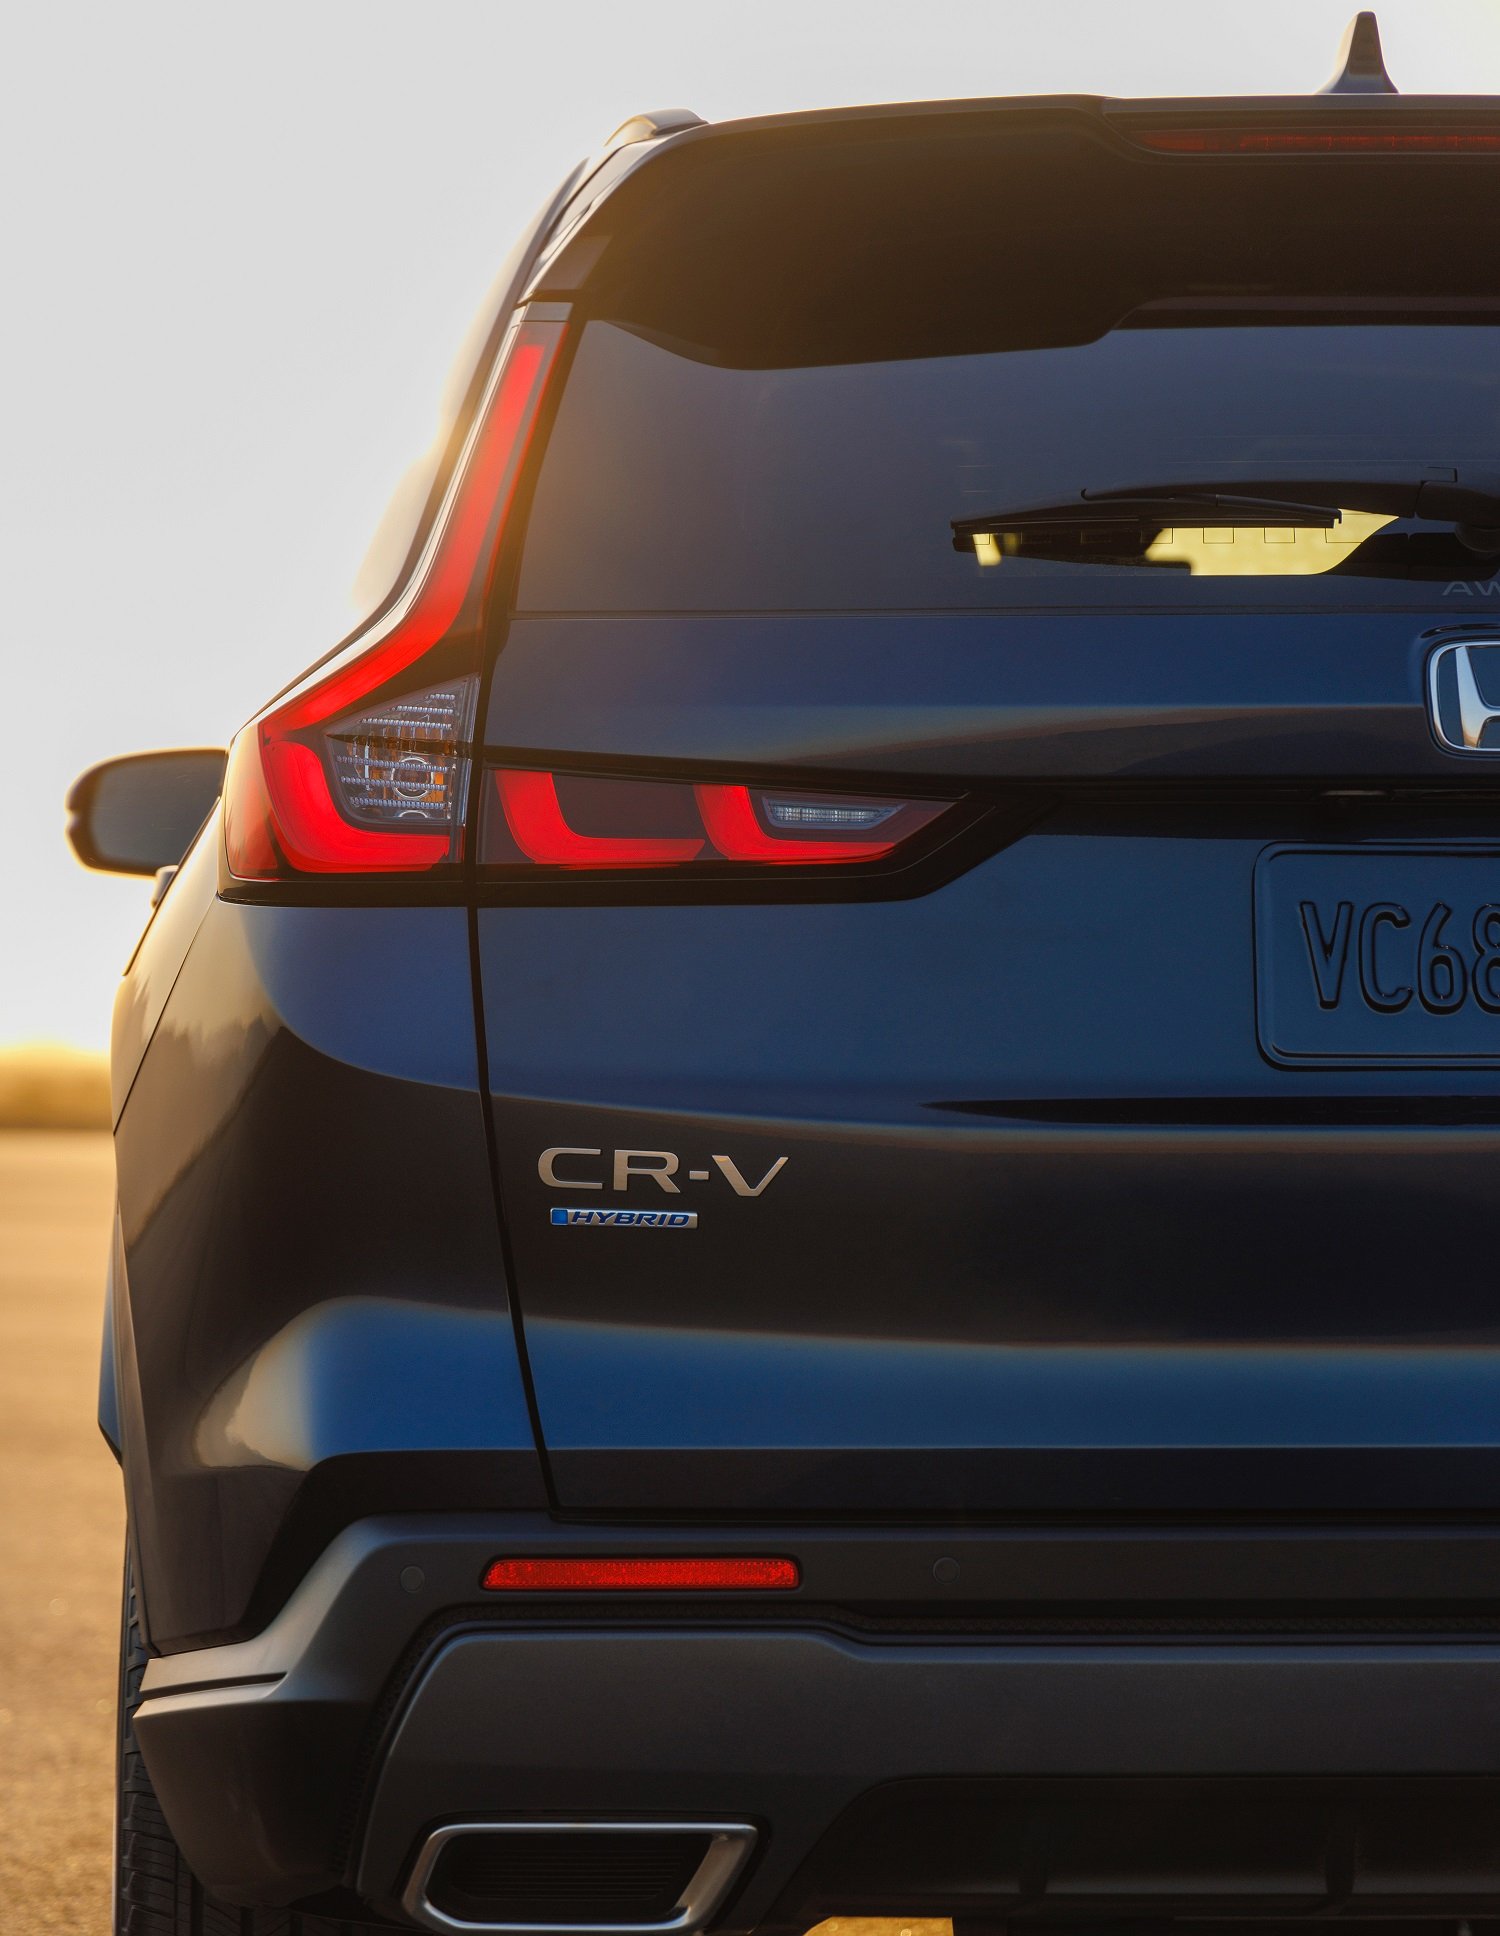 New Honda CR-V officially teased